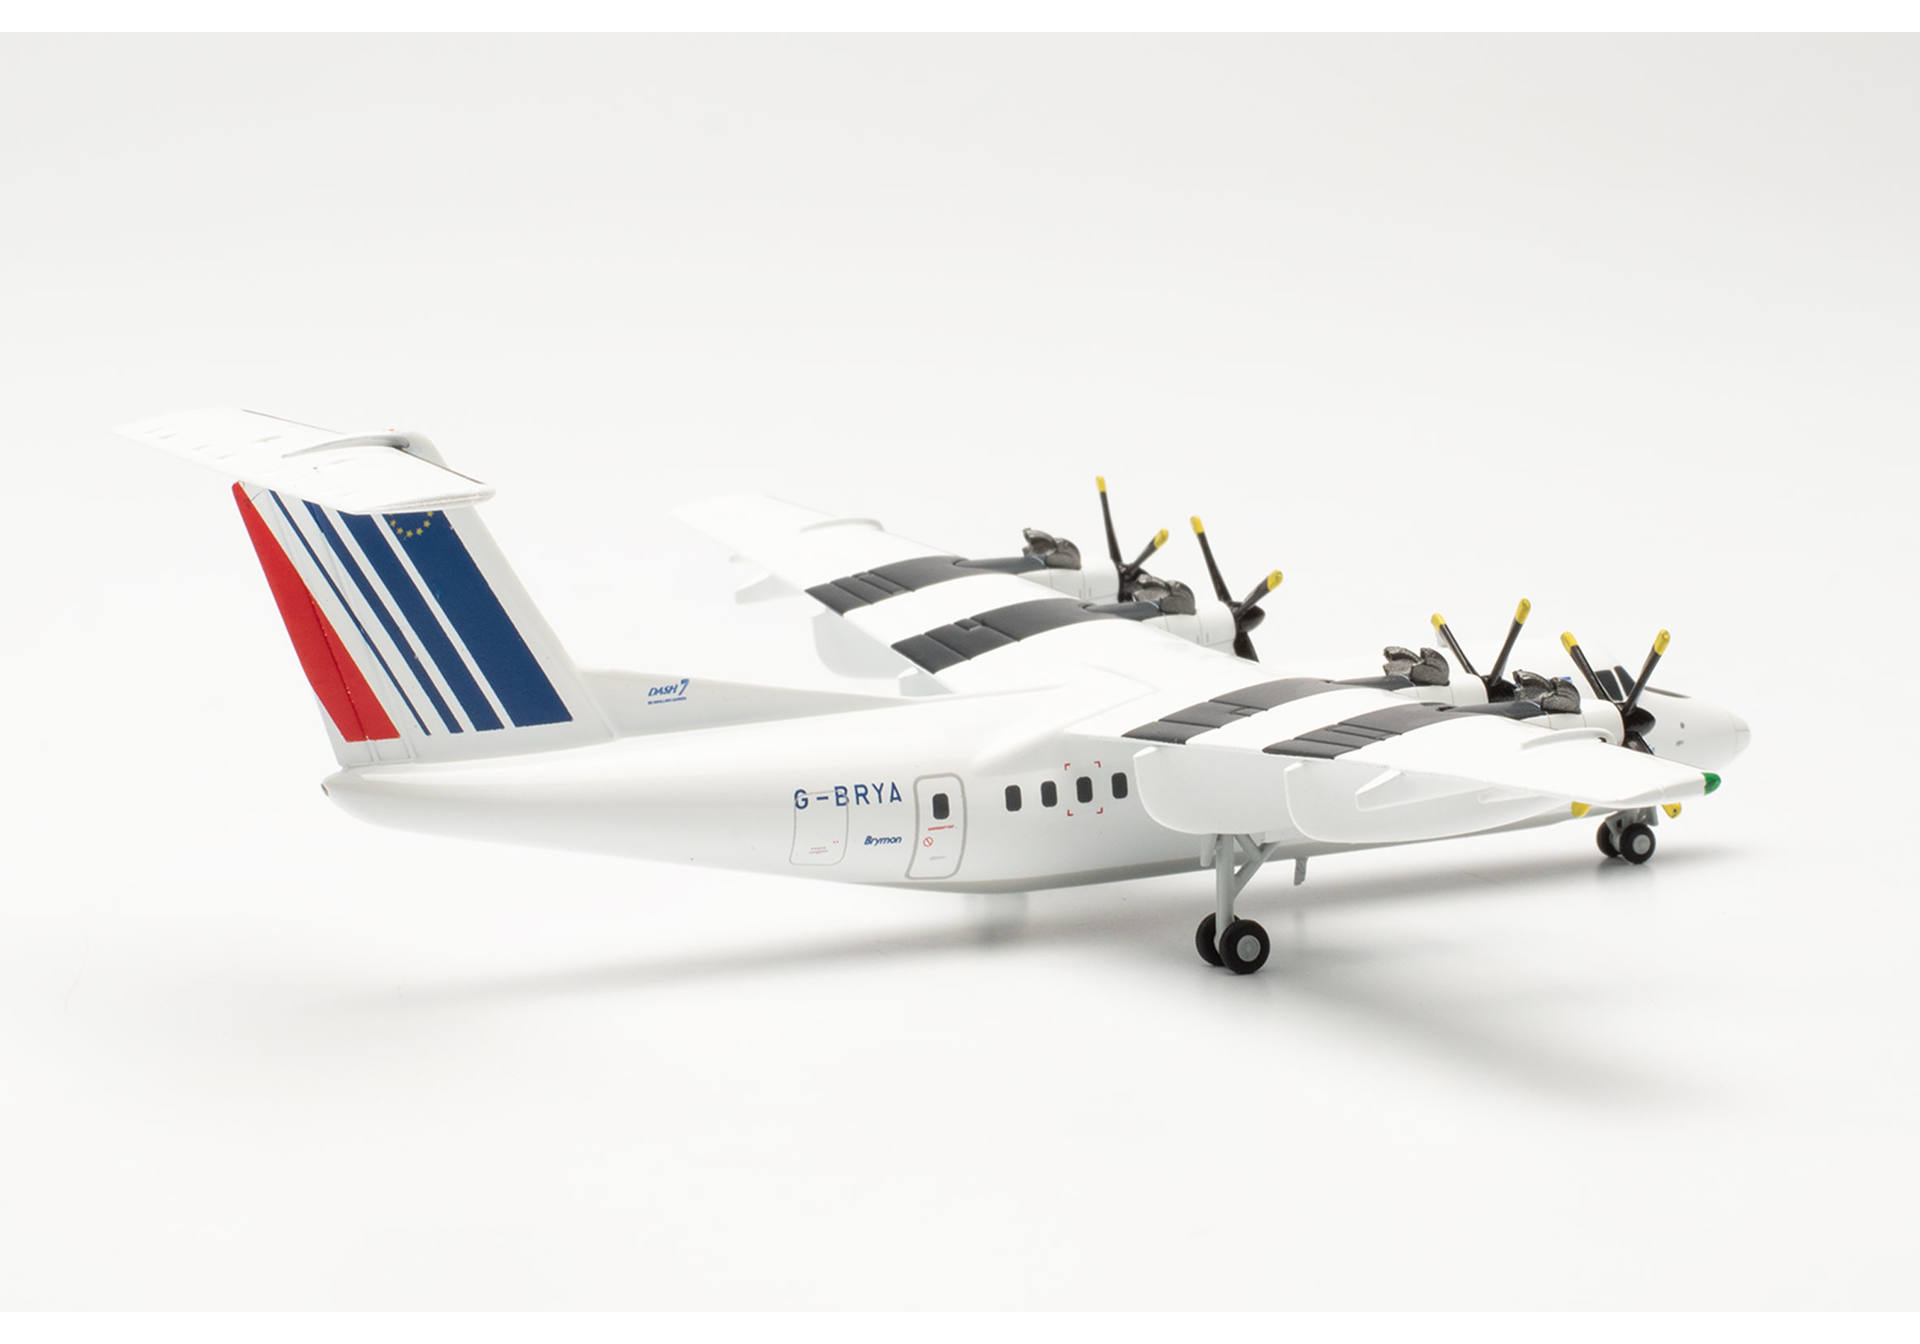 Air France De Havilland Canada DHC-7 – G-BRYA "Ville de Paris"